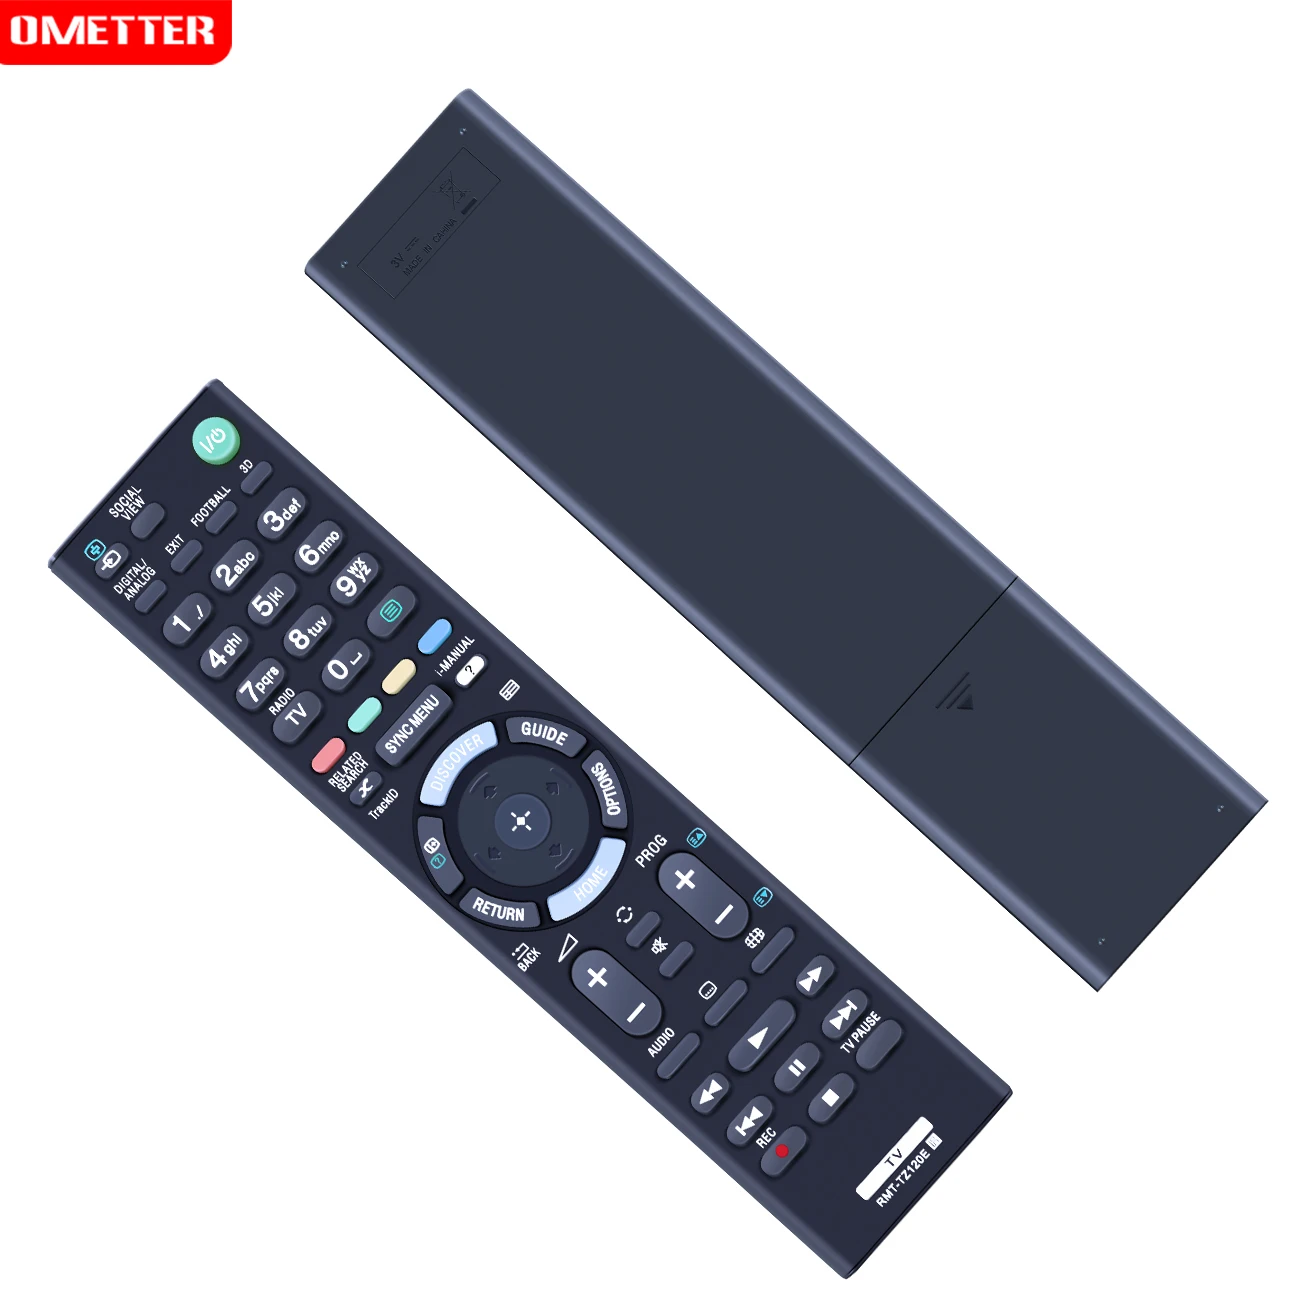 НОВАЯ замена RMT-TZ120E для SONY LED TV KDL-40R473A с 3D футбольной трансляцией KDL-46W904A KDL-55W904A KDL-46W954A KDL-55W954A